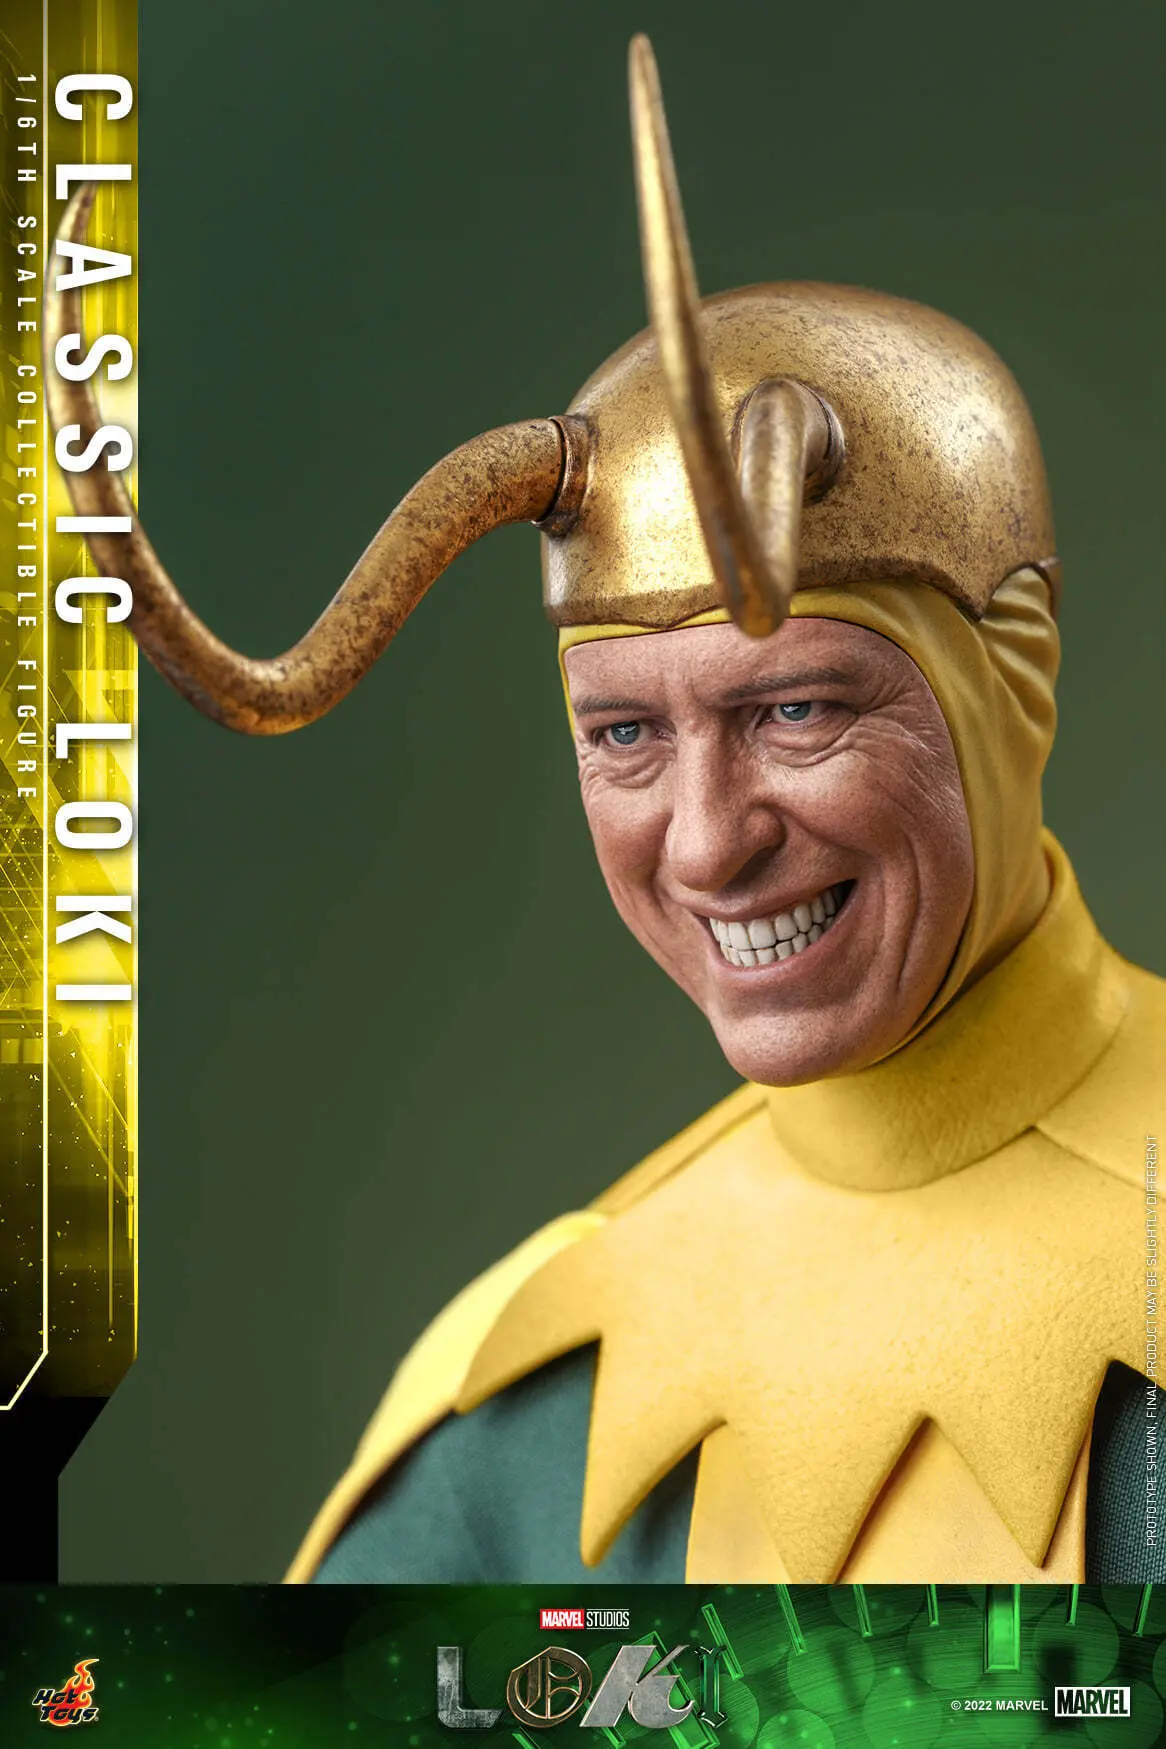 Universo Marvel 616: Fotos das filmagens de Loki revelam novo ator